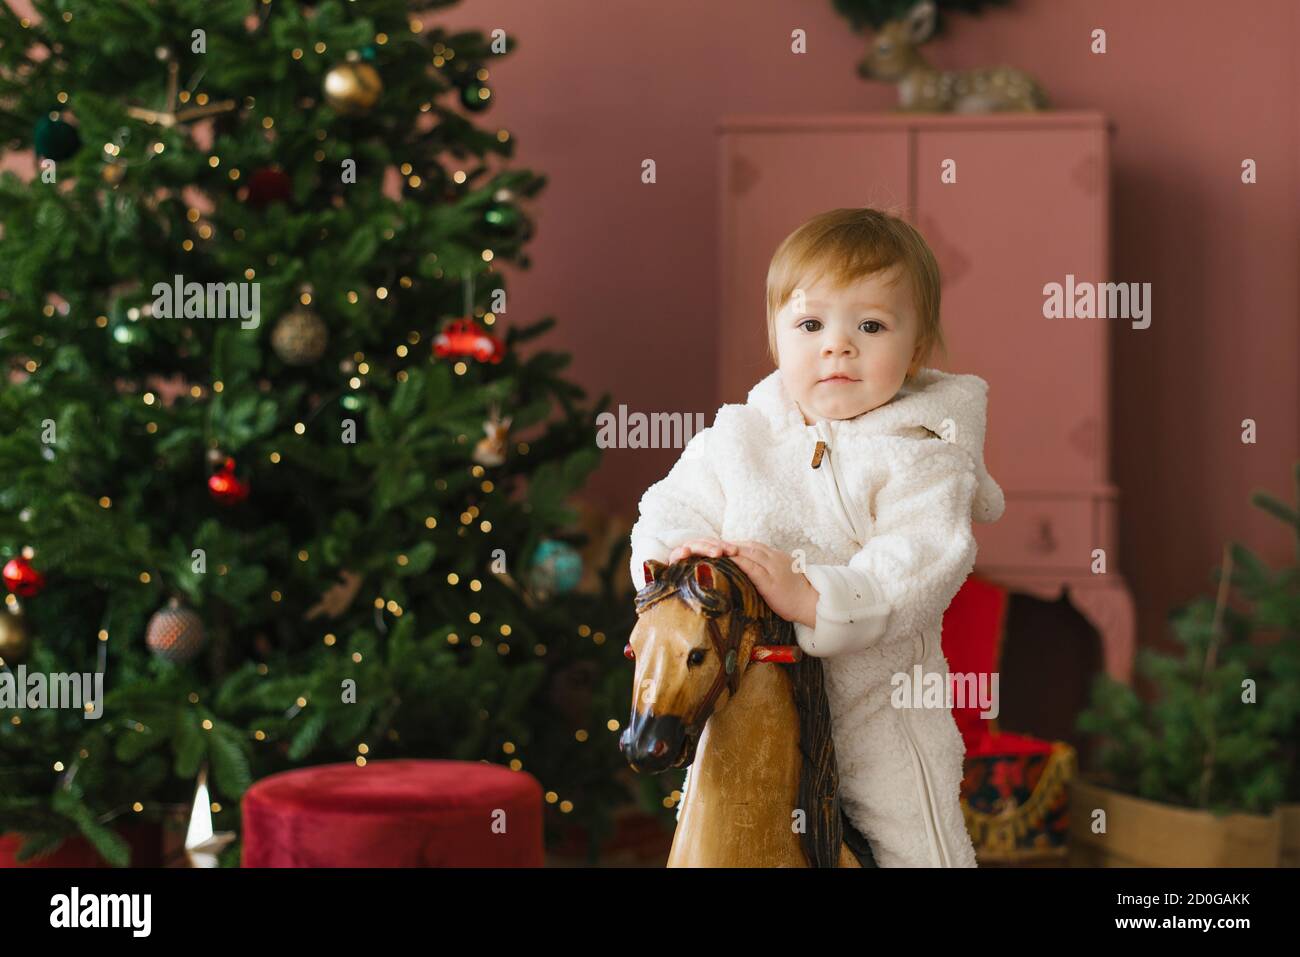 Ein kleines Kind von einem Jahr sitzt auf einem Holzpferd in der Nähe des Weihnachtsbaums Stockfoto